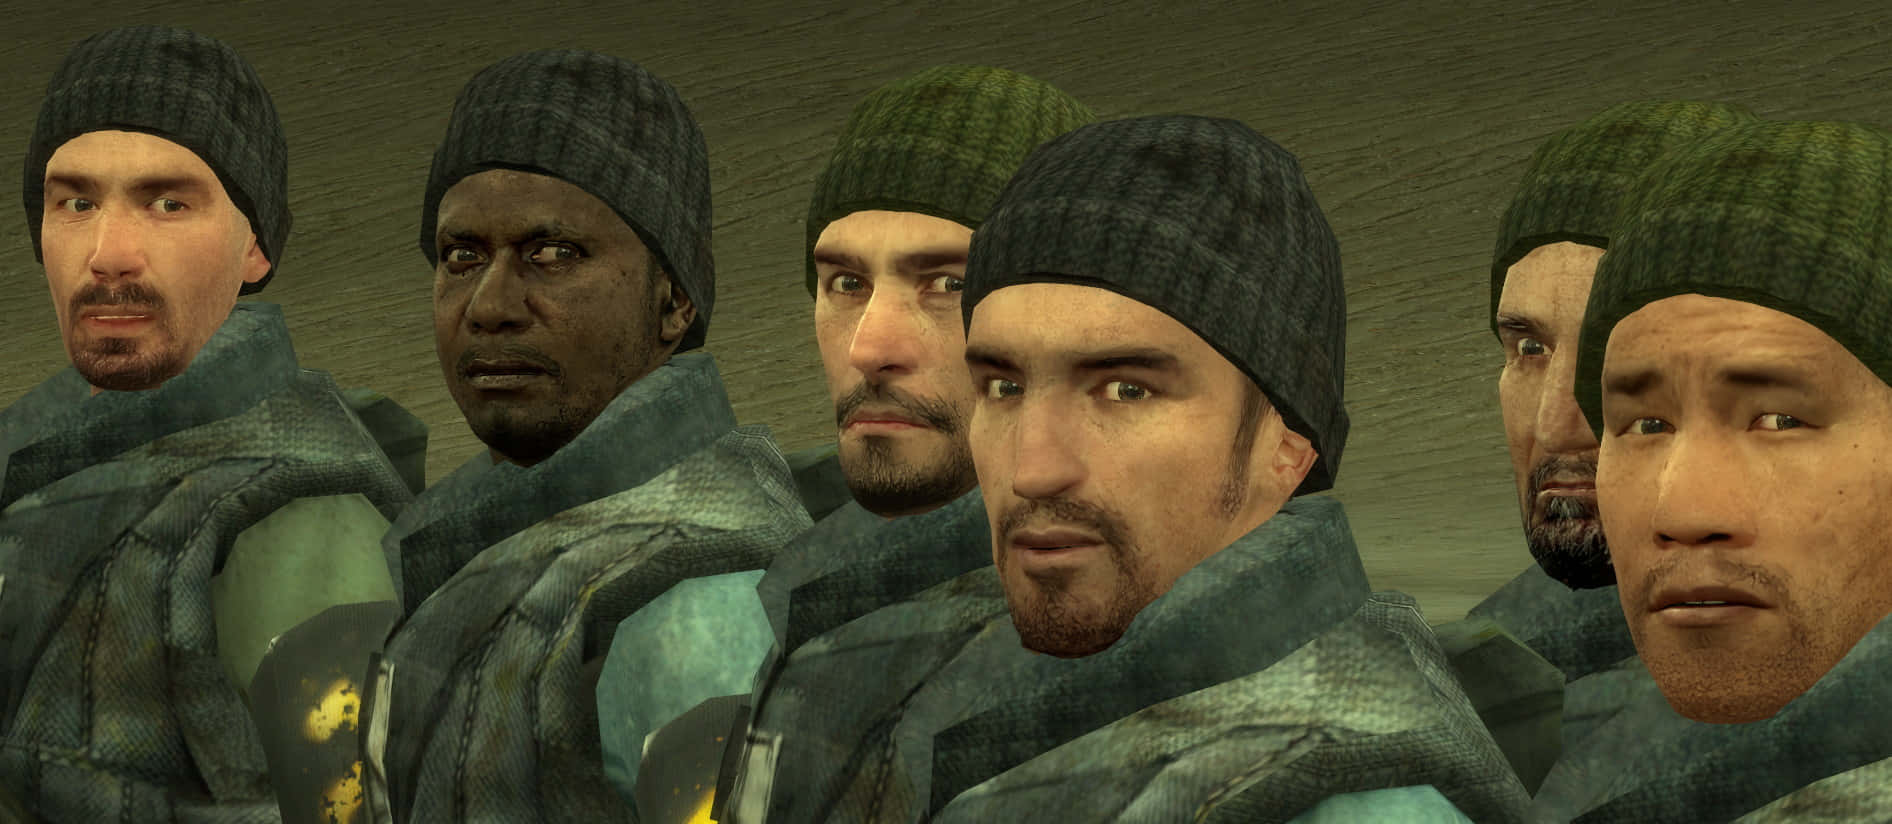 Personajesde Half-life Explorando Un Universo Dinámico. Fondo de pantalla